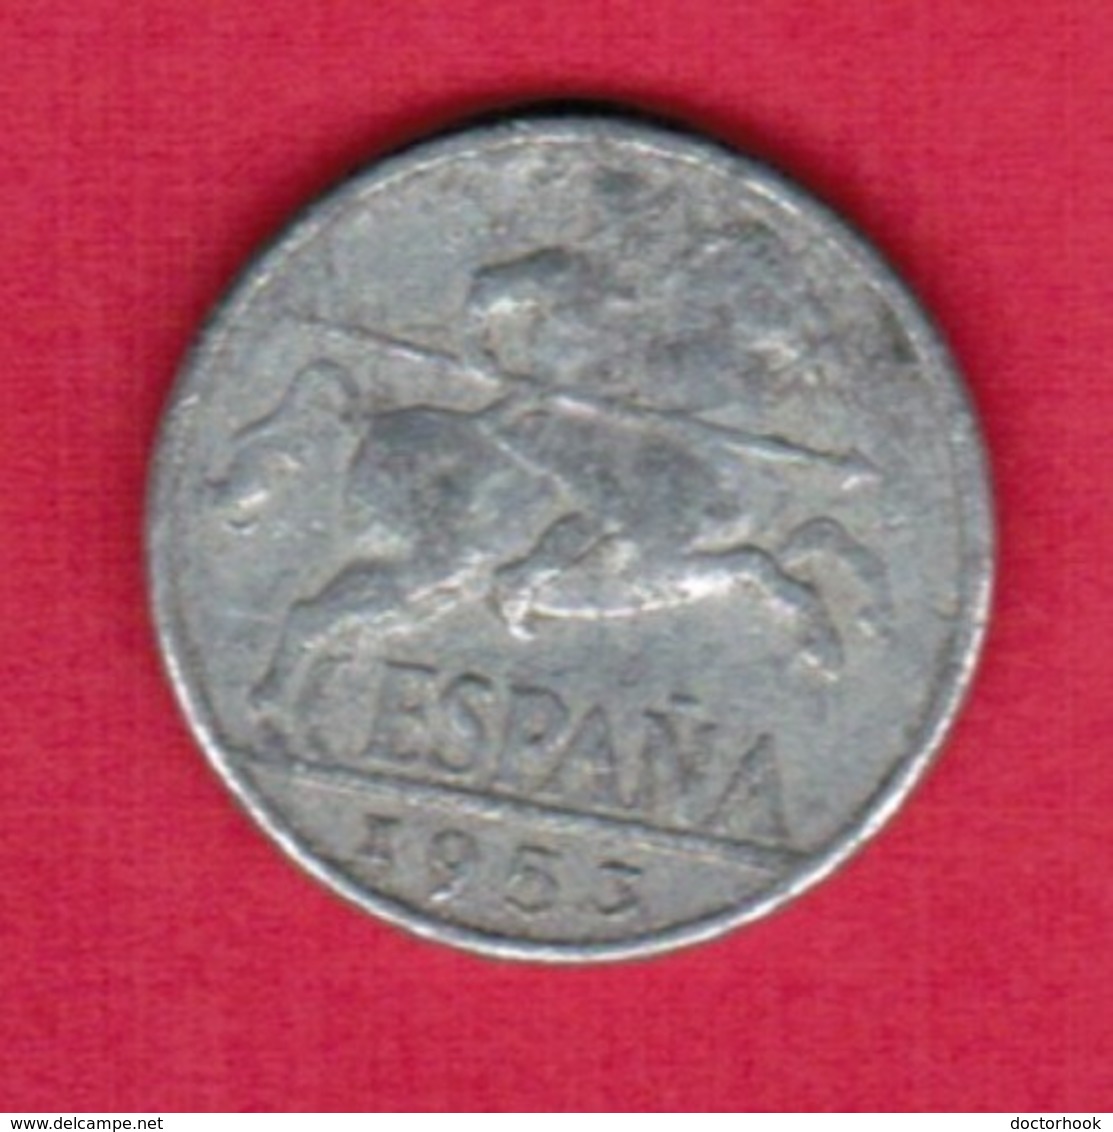 SPAIN   10 CENTIMOS 1953 (KM # 766) #5373 - 10 Céntimos